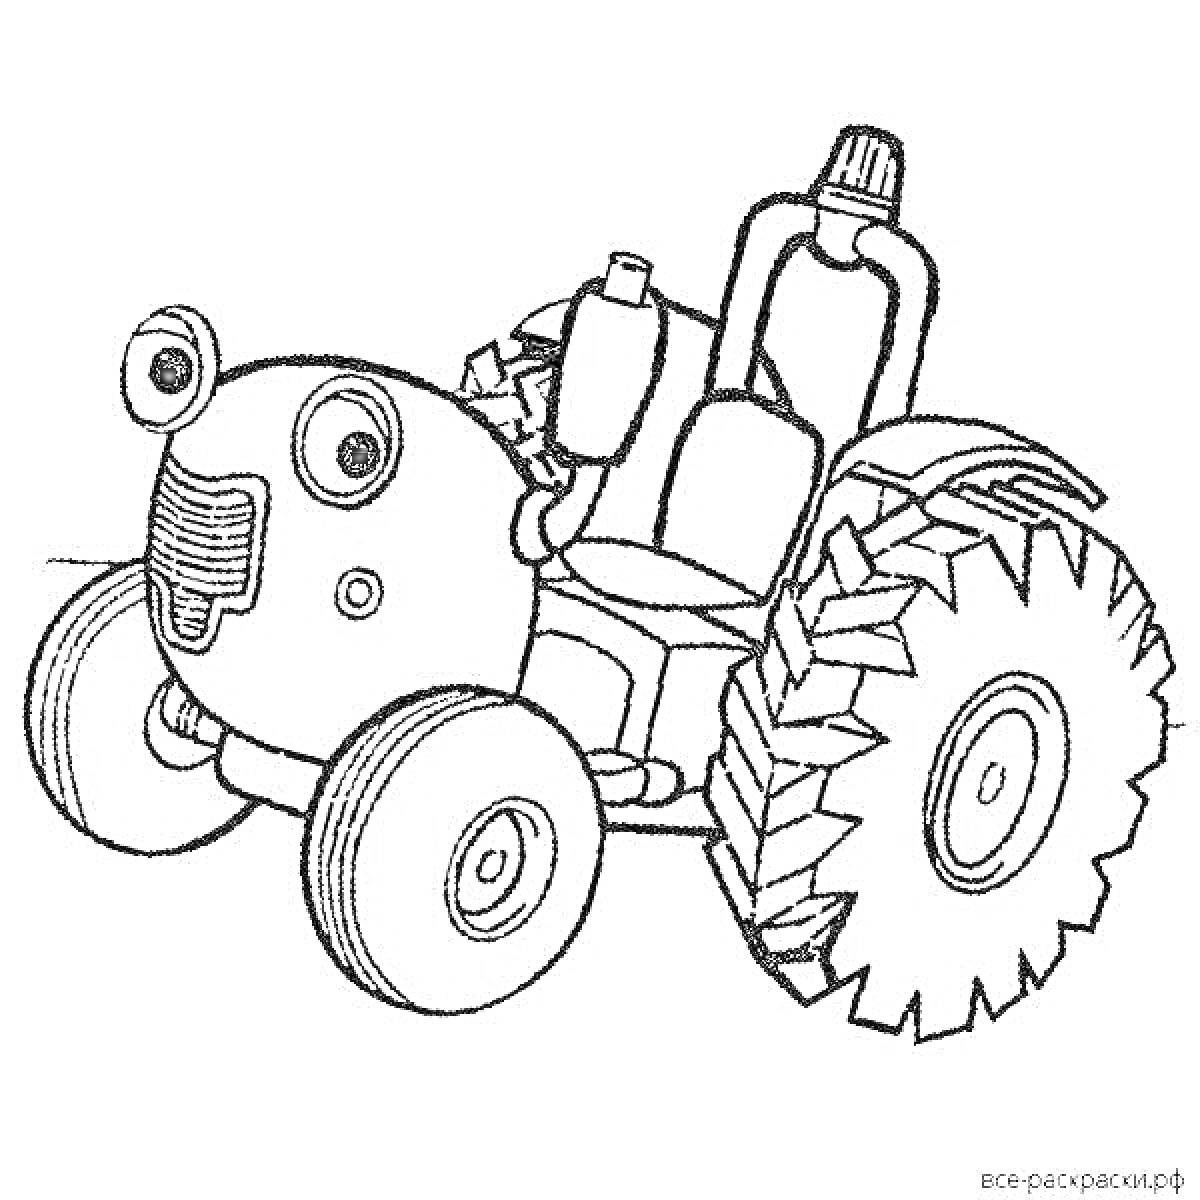 Раскраска Трактор с большими колесами, фарами и выхлопной трубой